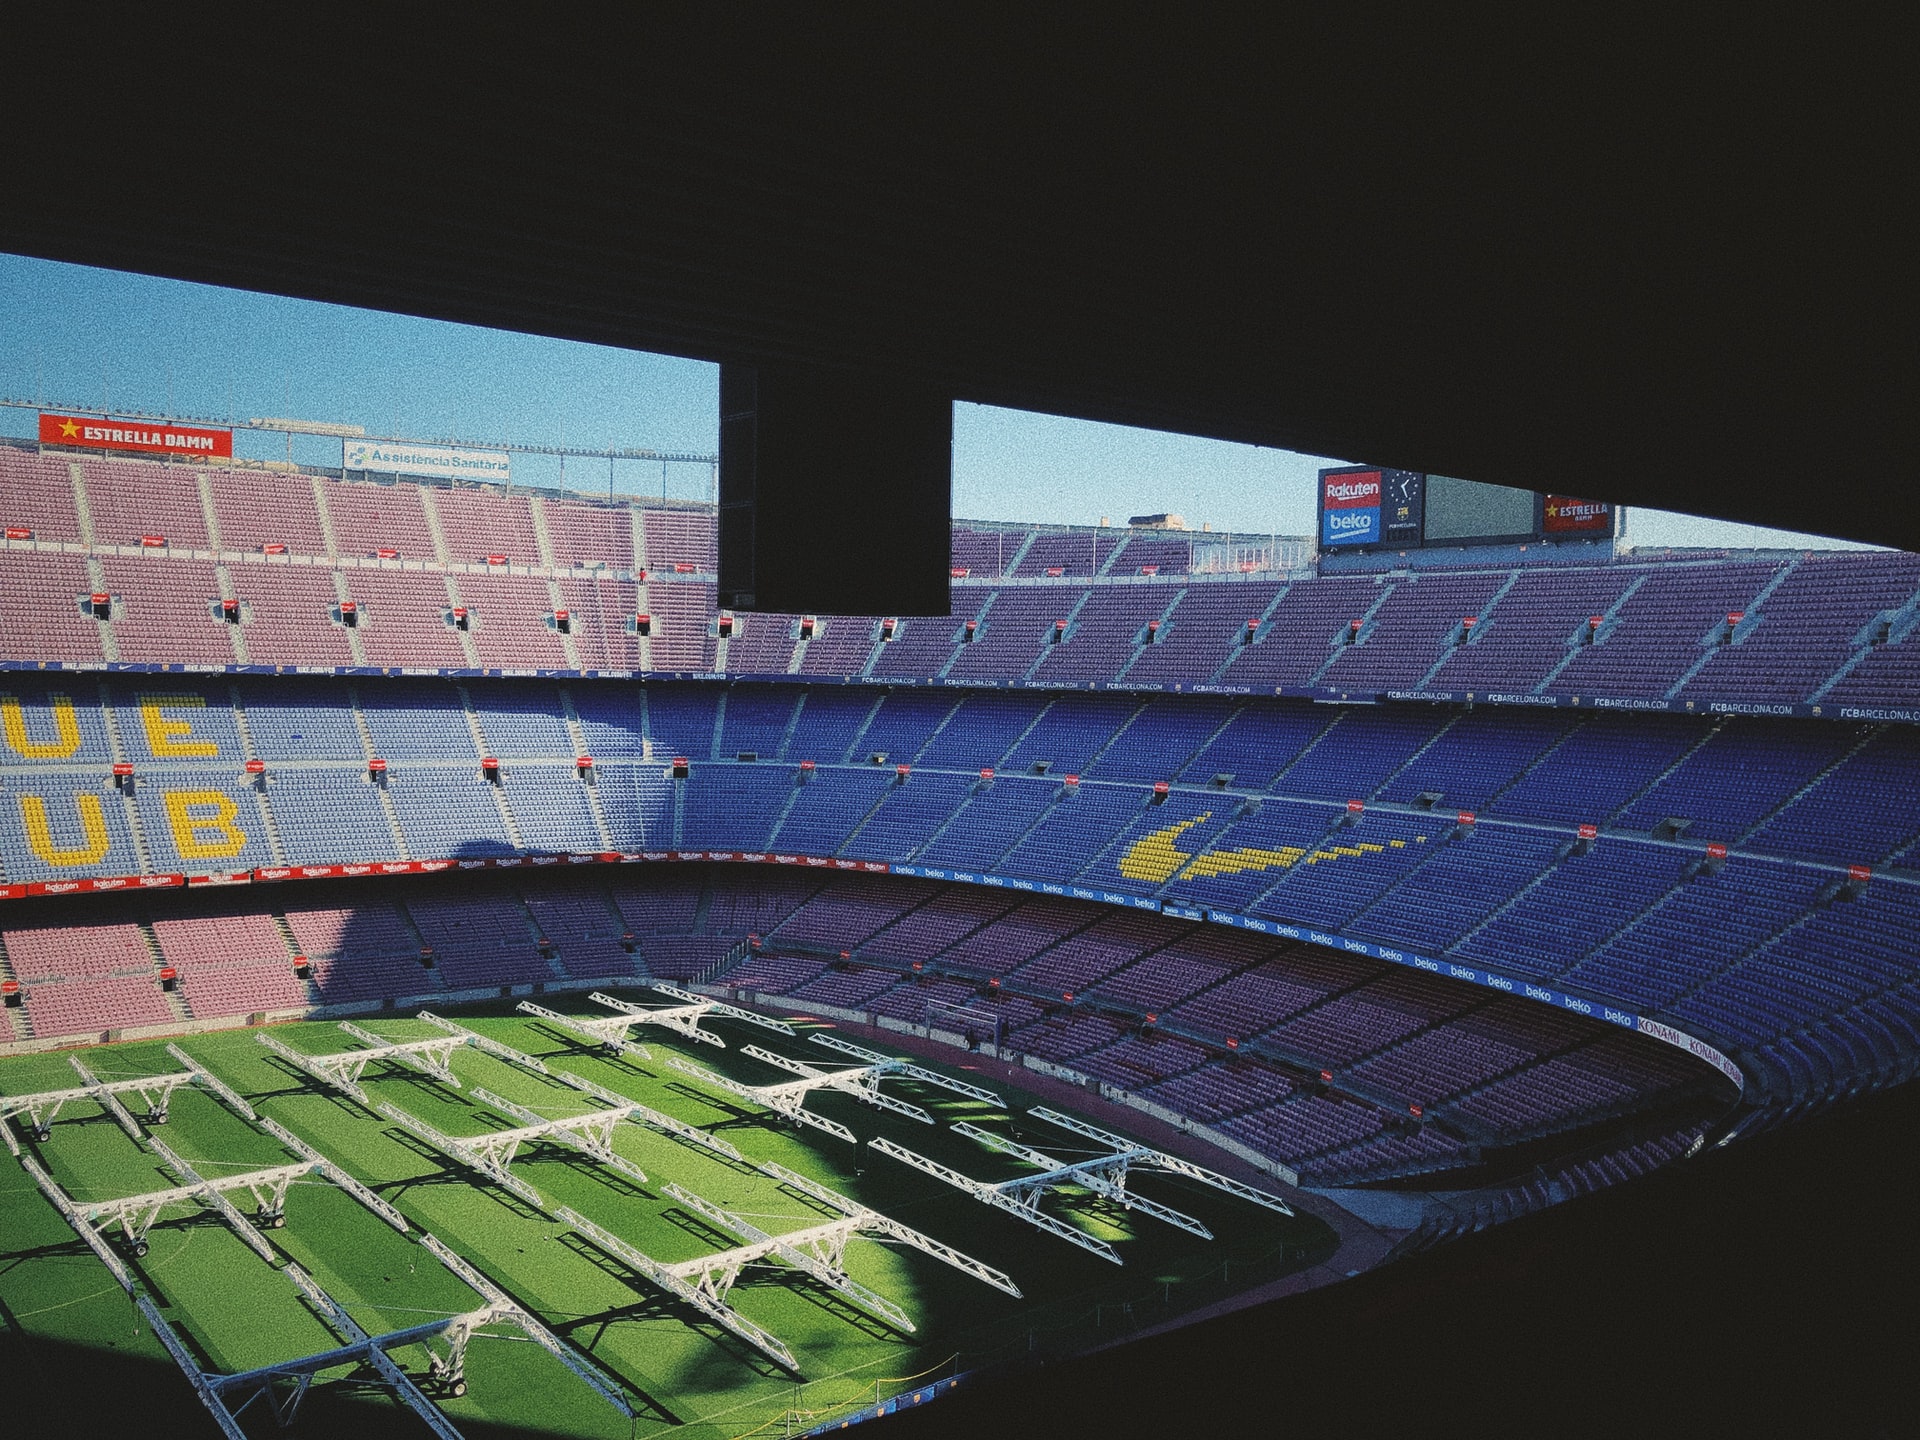 Sede del Camp Nou, Les Corts è una delle mete preferite dai tifosi di calcio che si recano a Barcellona per una partita del Barça.